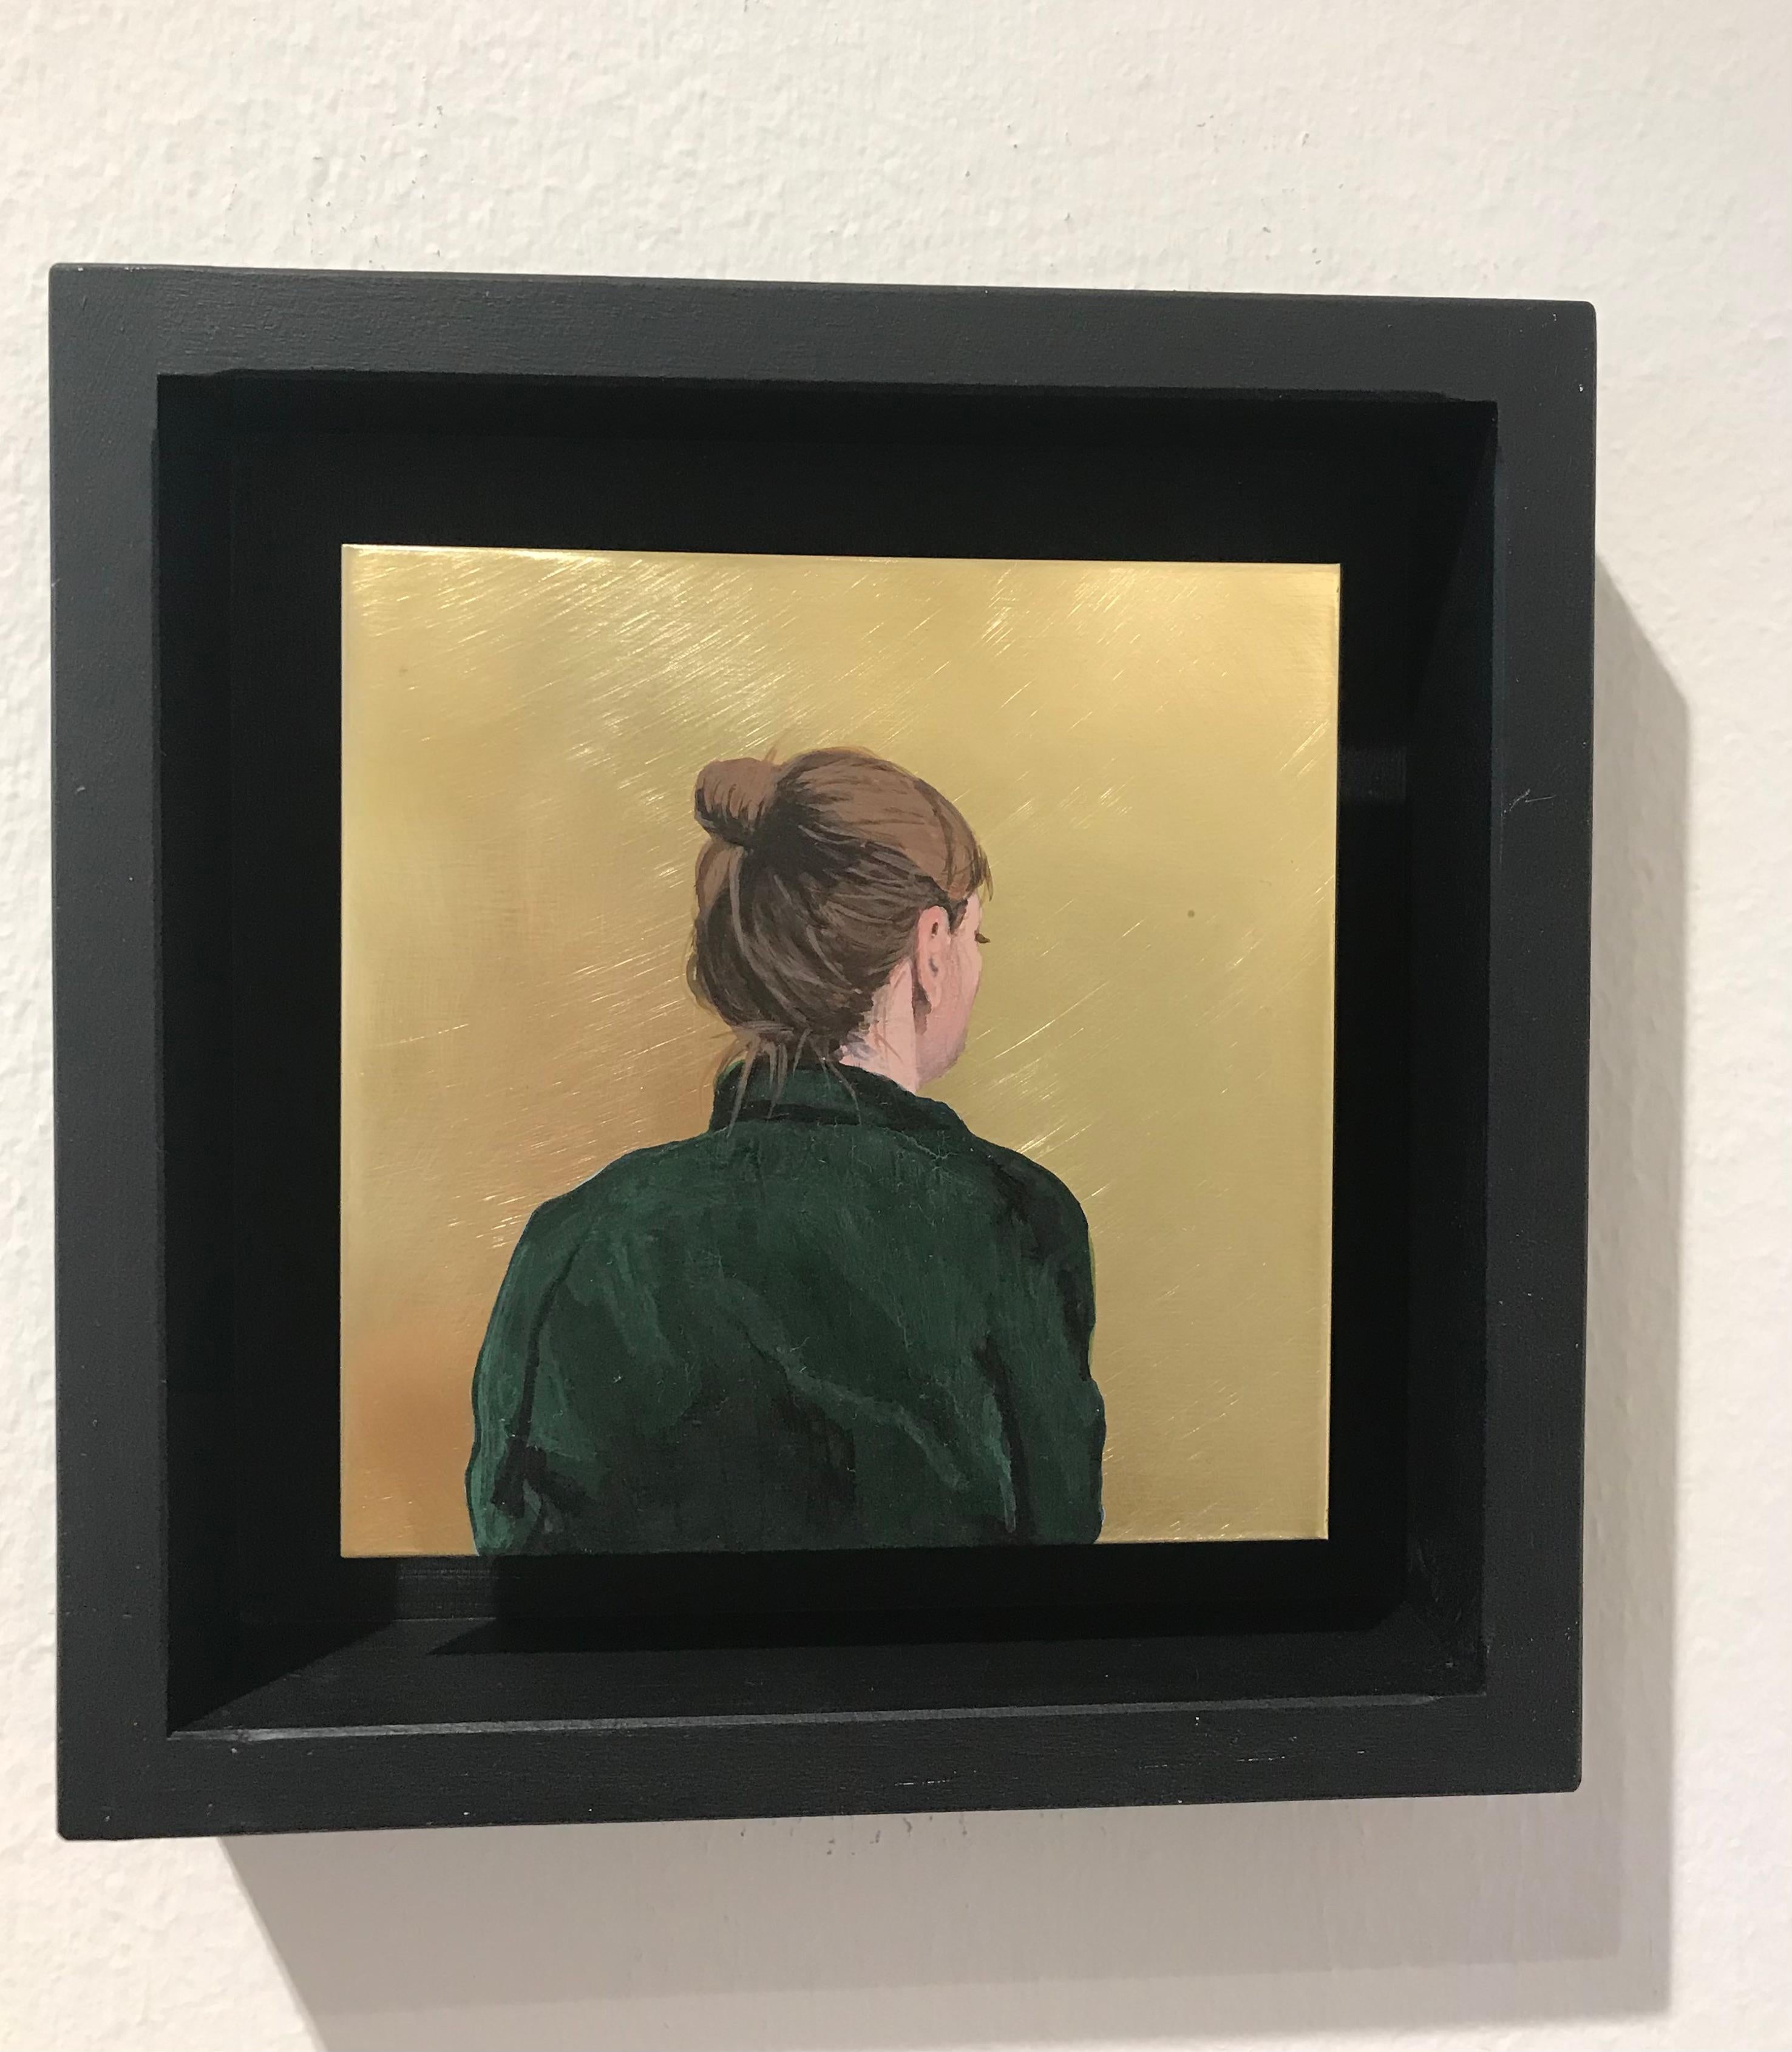 ''Golden Moment XLIV'' Portrait contemporain d'une jeune fille au chemisier vert sur laiton - Painting de Karoline Kroiss